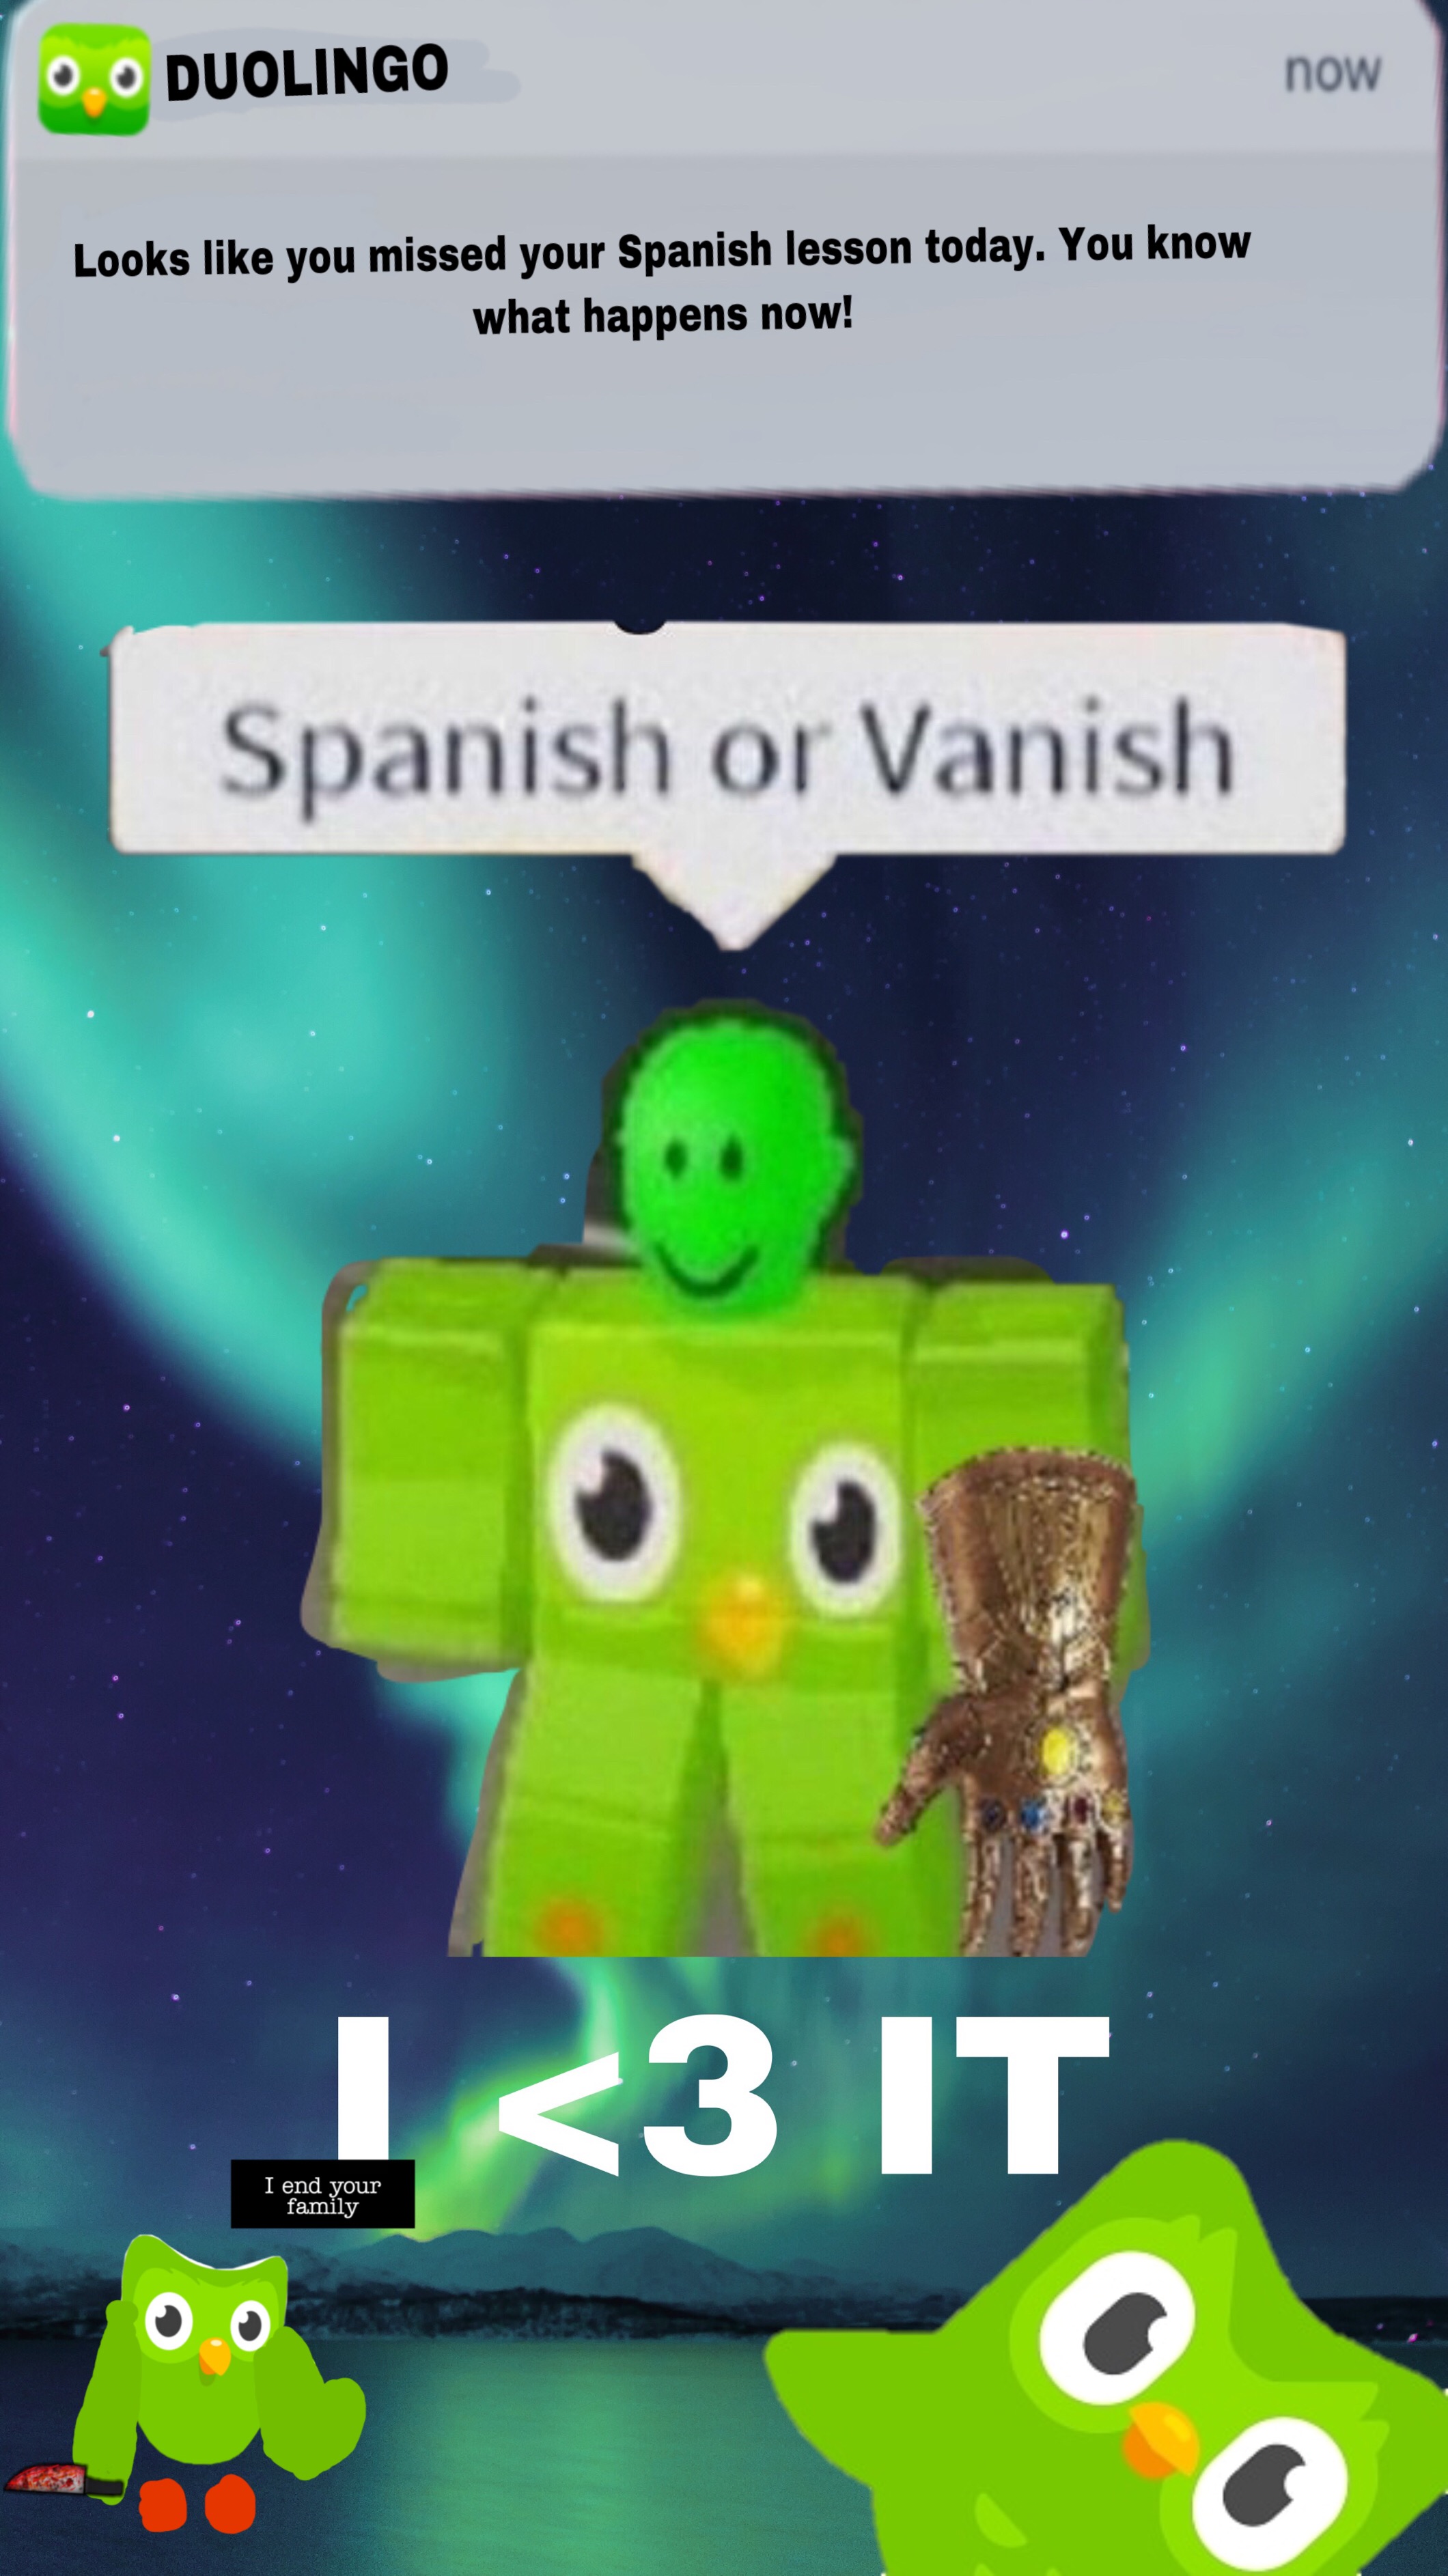 Duolingo Meme Roblox Image By Uxu - spanish or vanish roblox meme